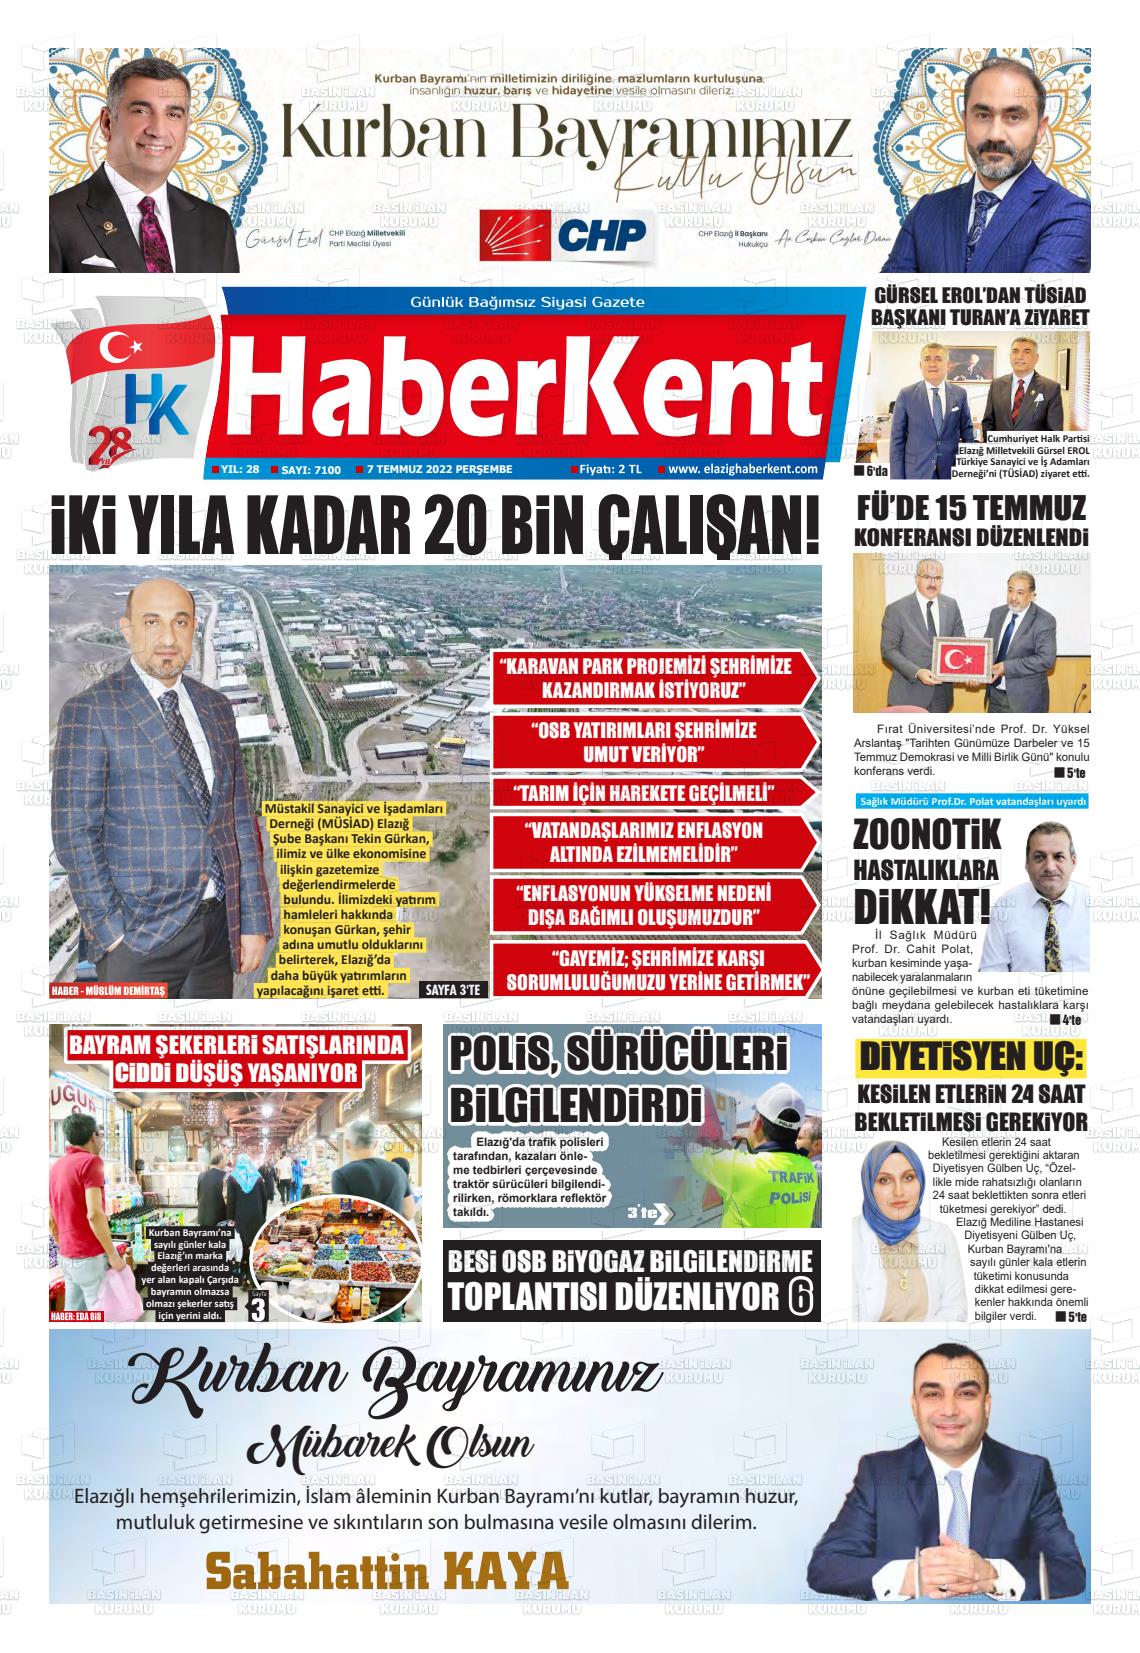 07 Temmuz 2022 Elazığ Haberkent Gazete Manşeti